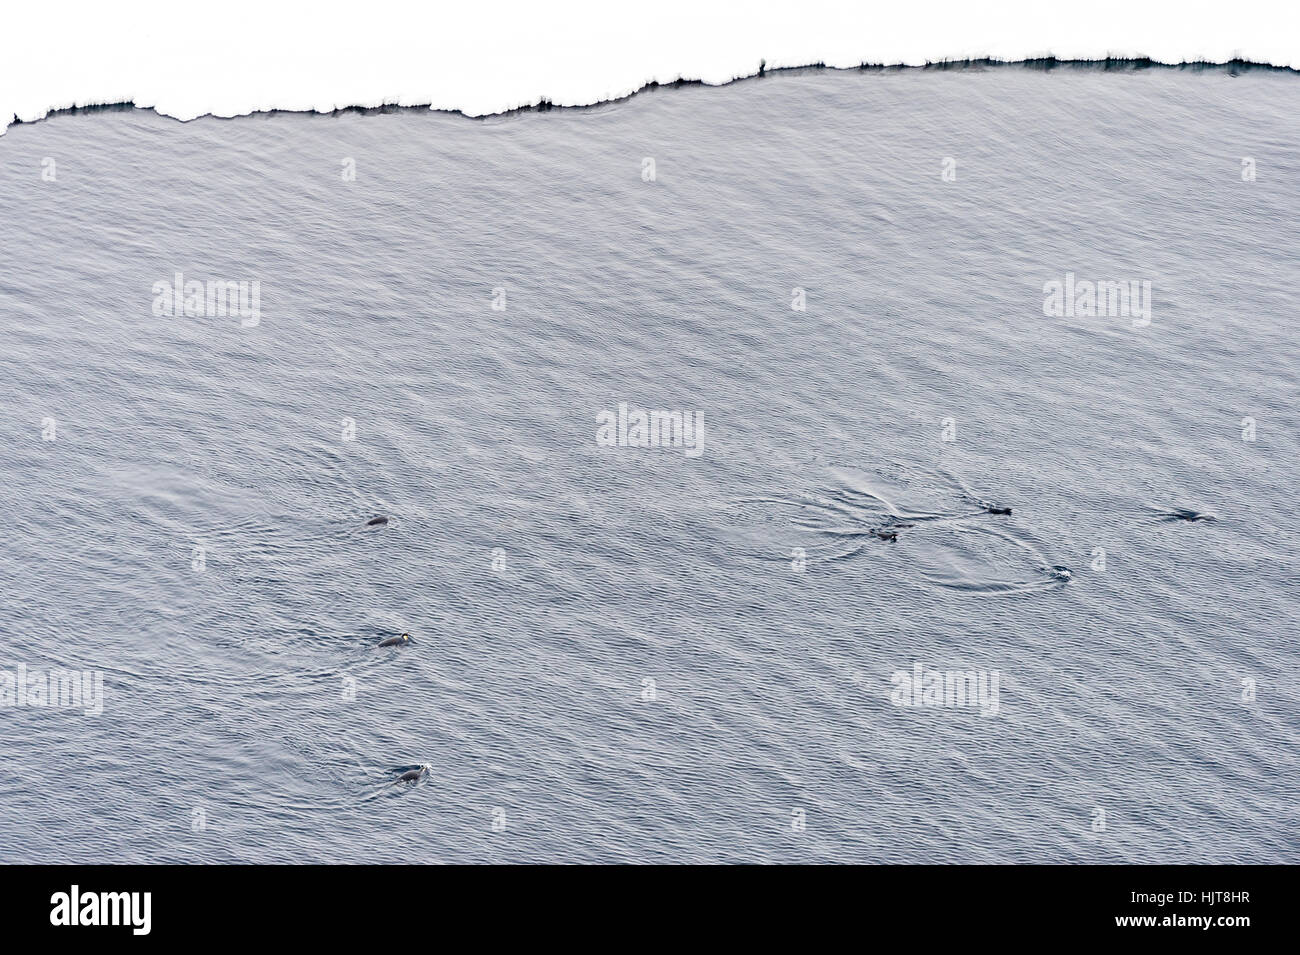 Pinguini imperatore nuotare nell'oceano lungo il mare bordo di ghiaccio in Antartide. Foto Stock